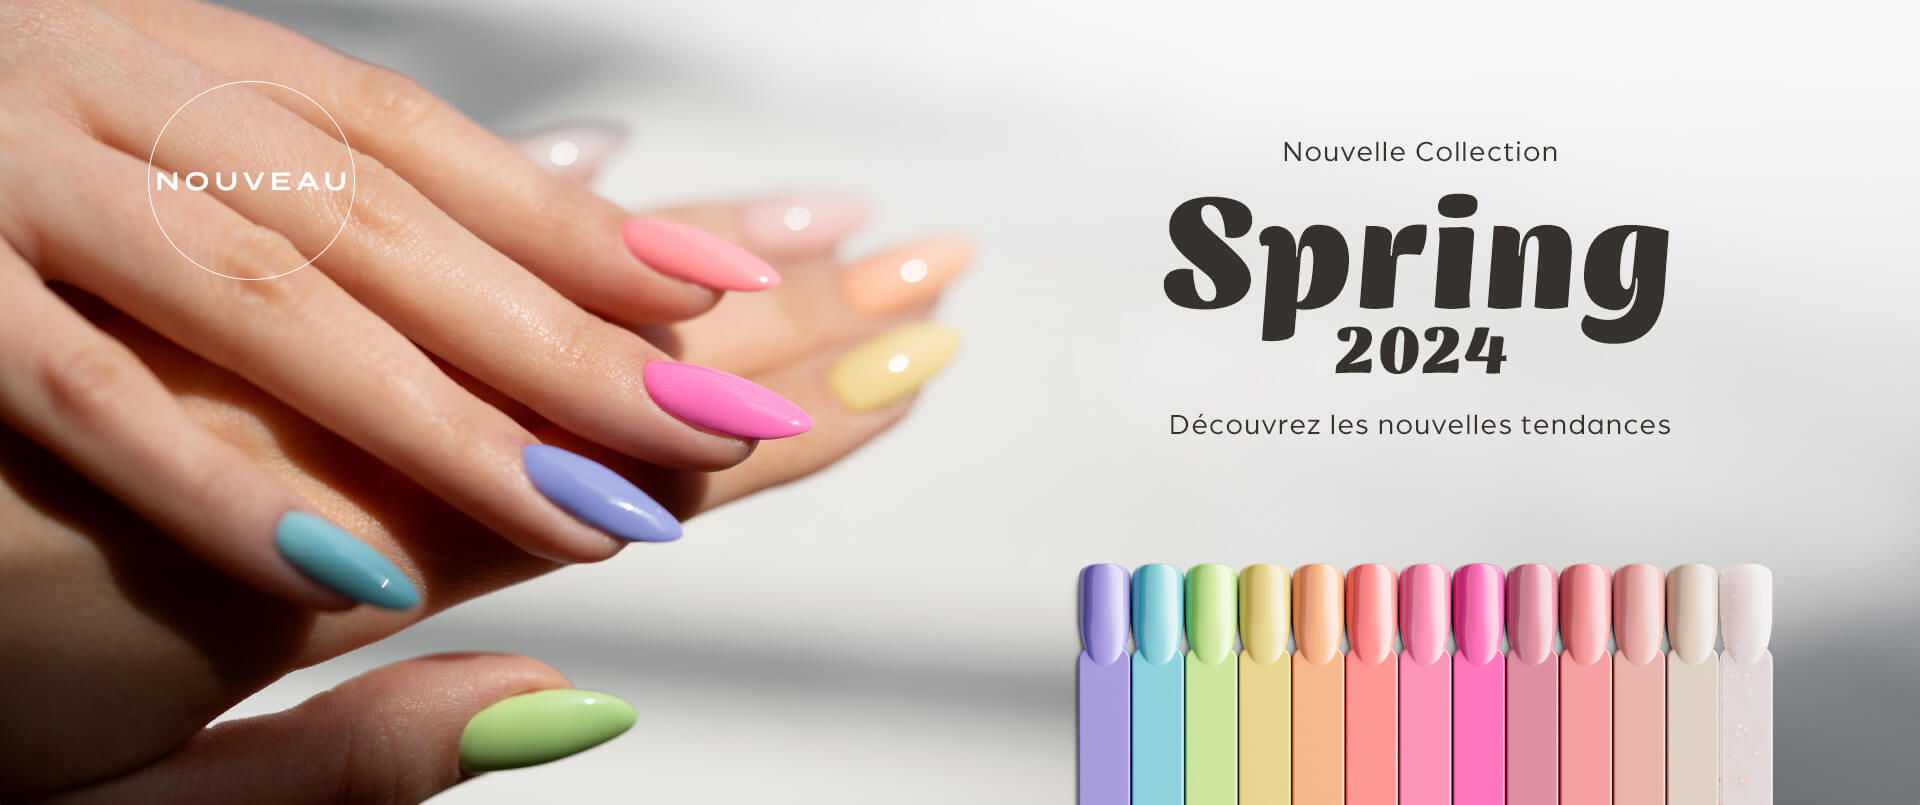 Collection Spring 2024 - Indigo Nails France